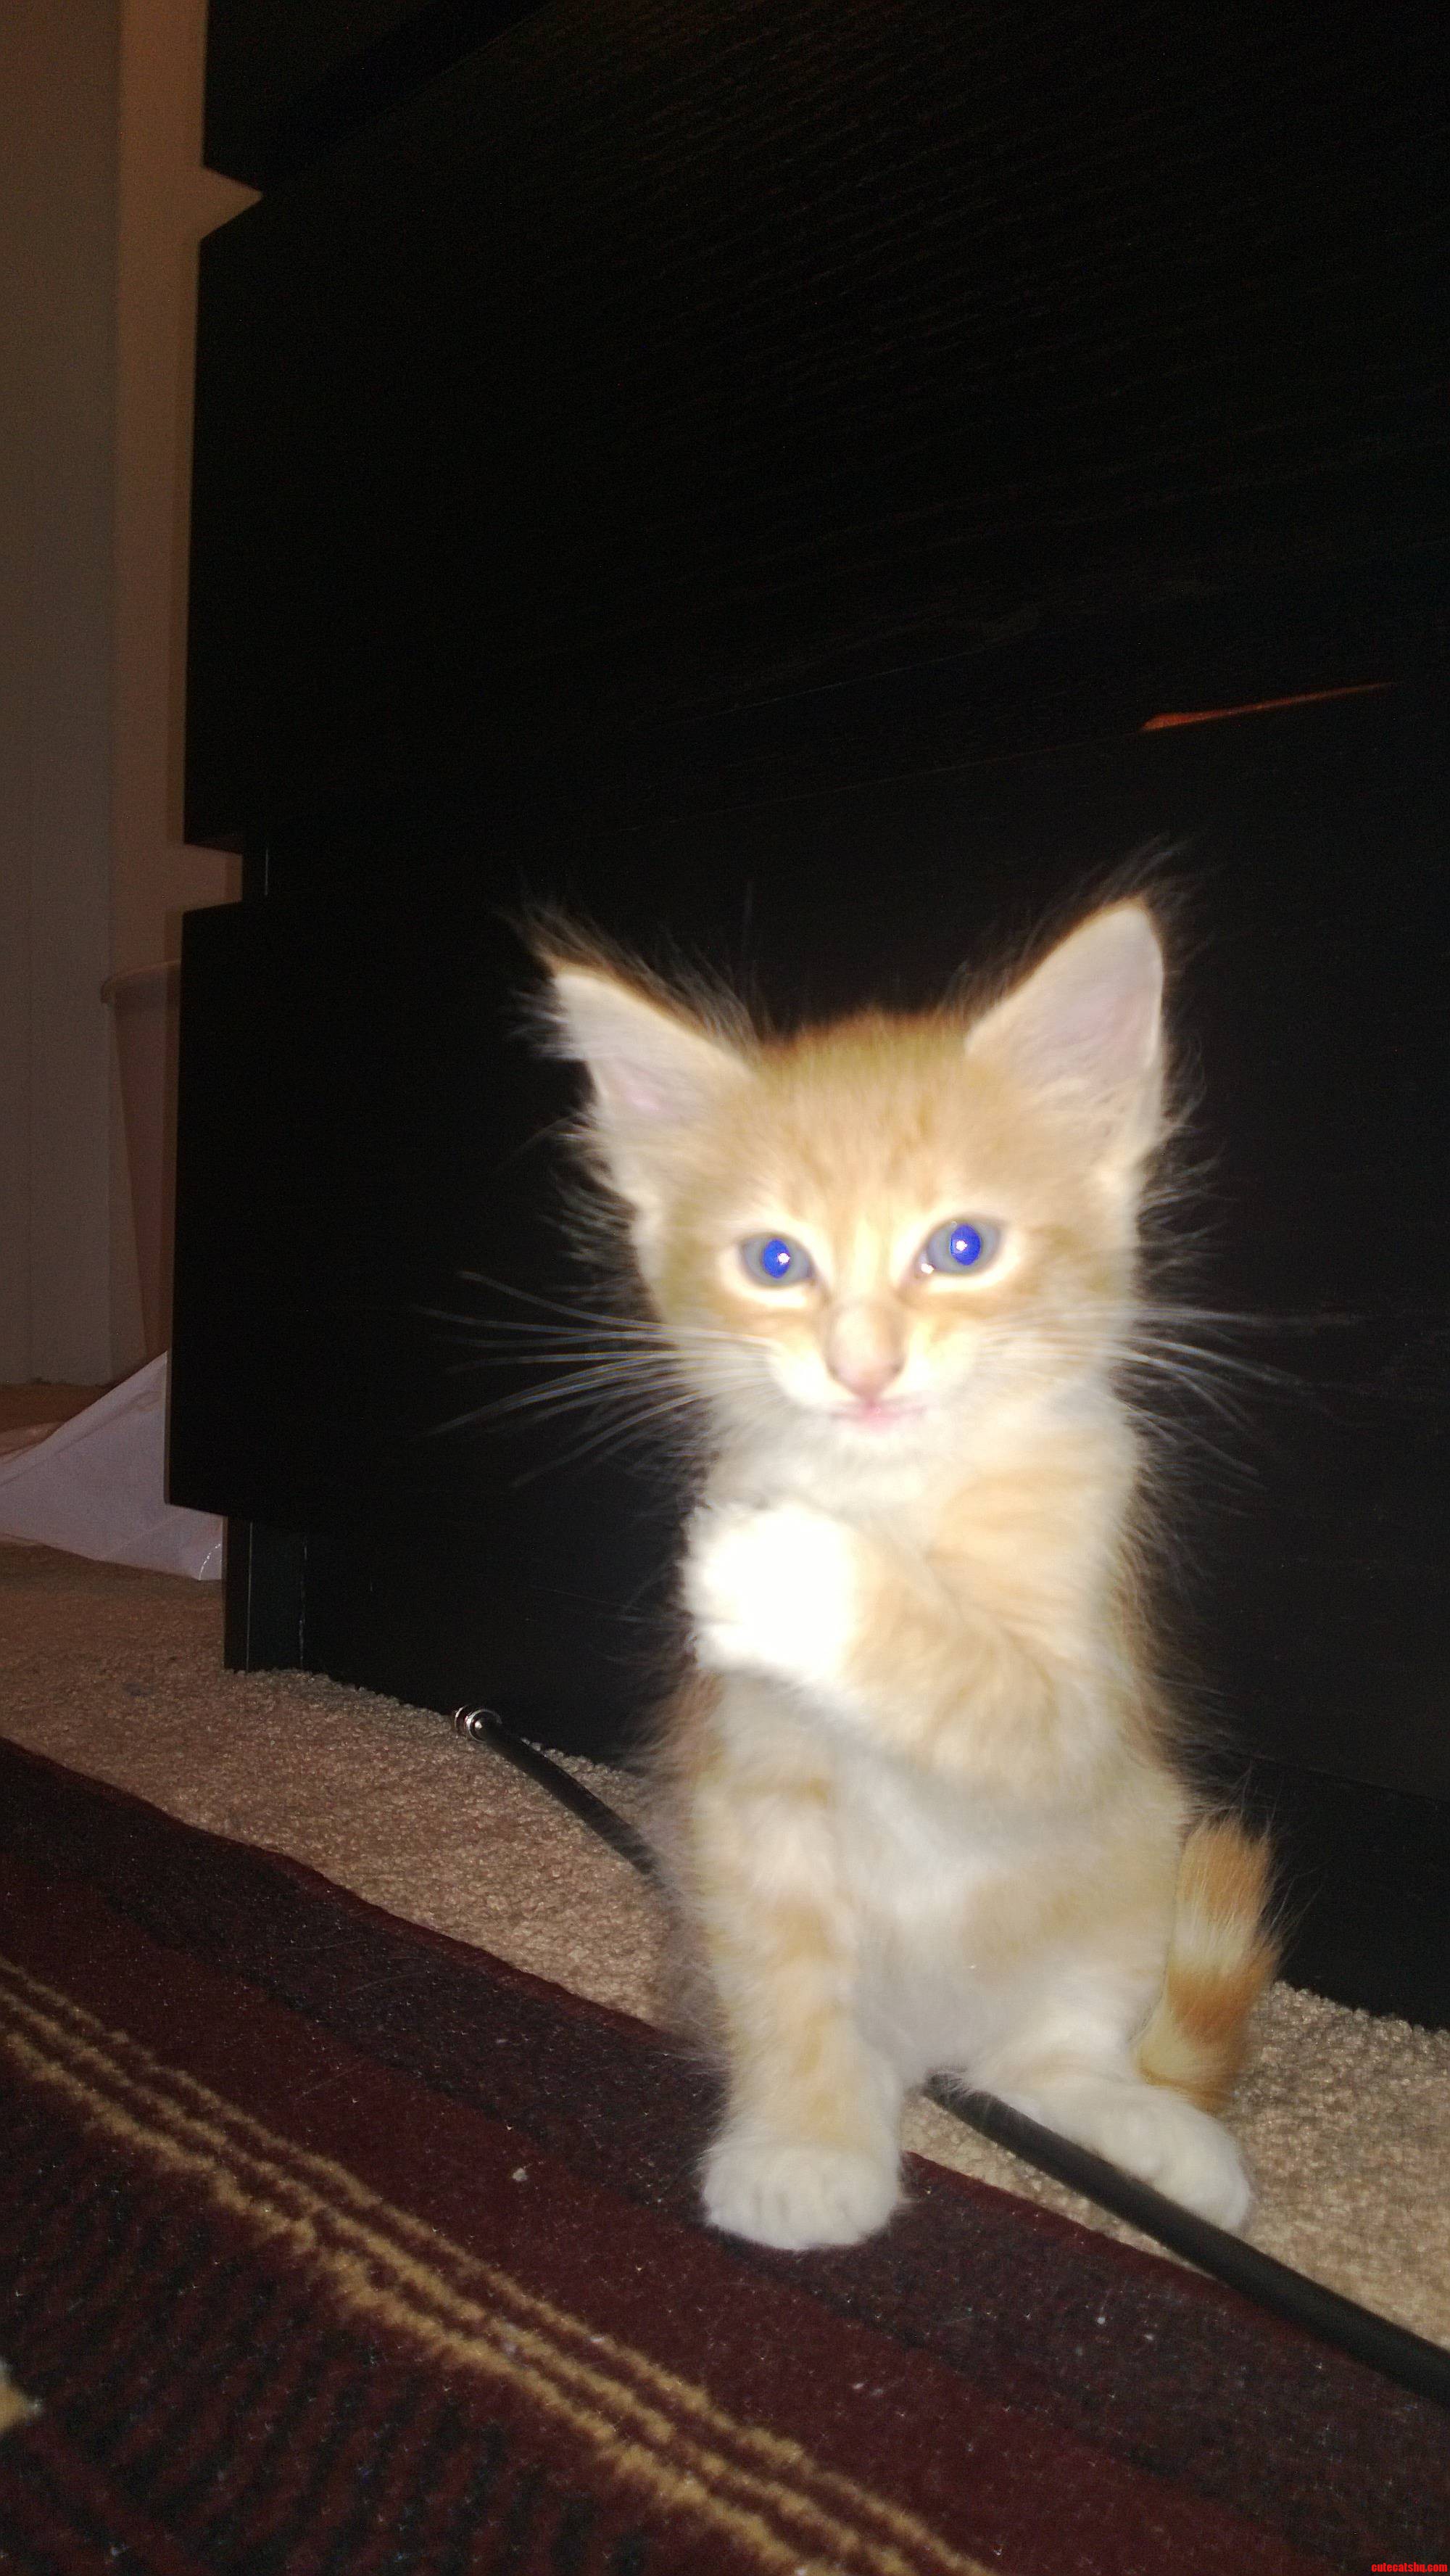 My New Kitty. Meet Osiris